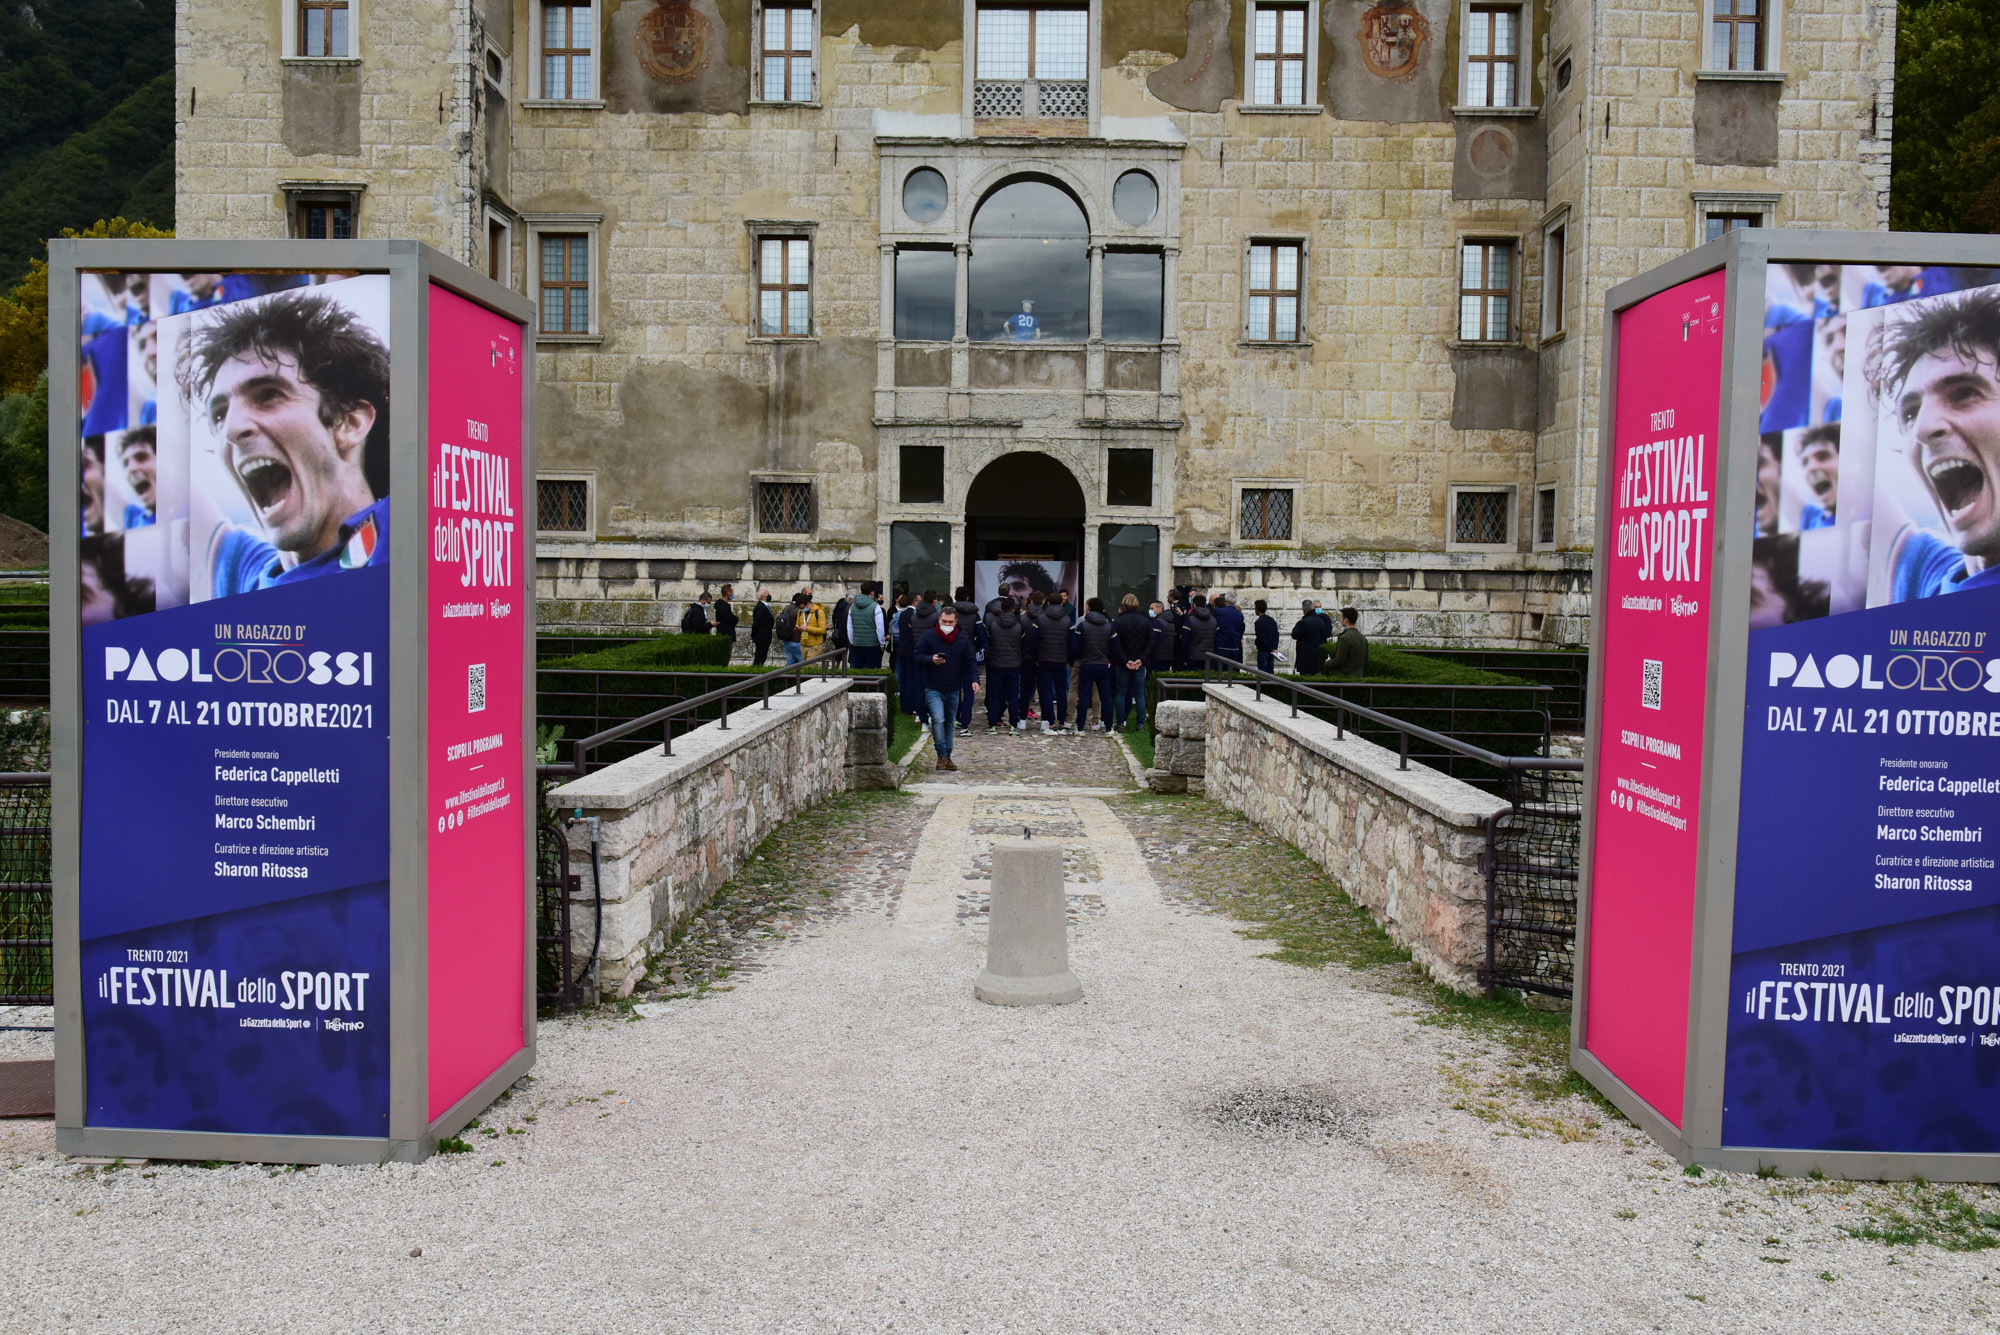 La mostra dedicata a Paolo Rossi al Palazzo delle Albere nell'ambito del Festival dello Sport